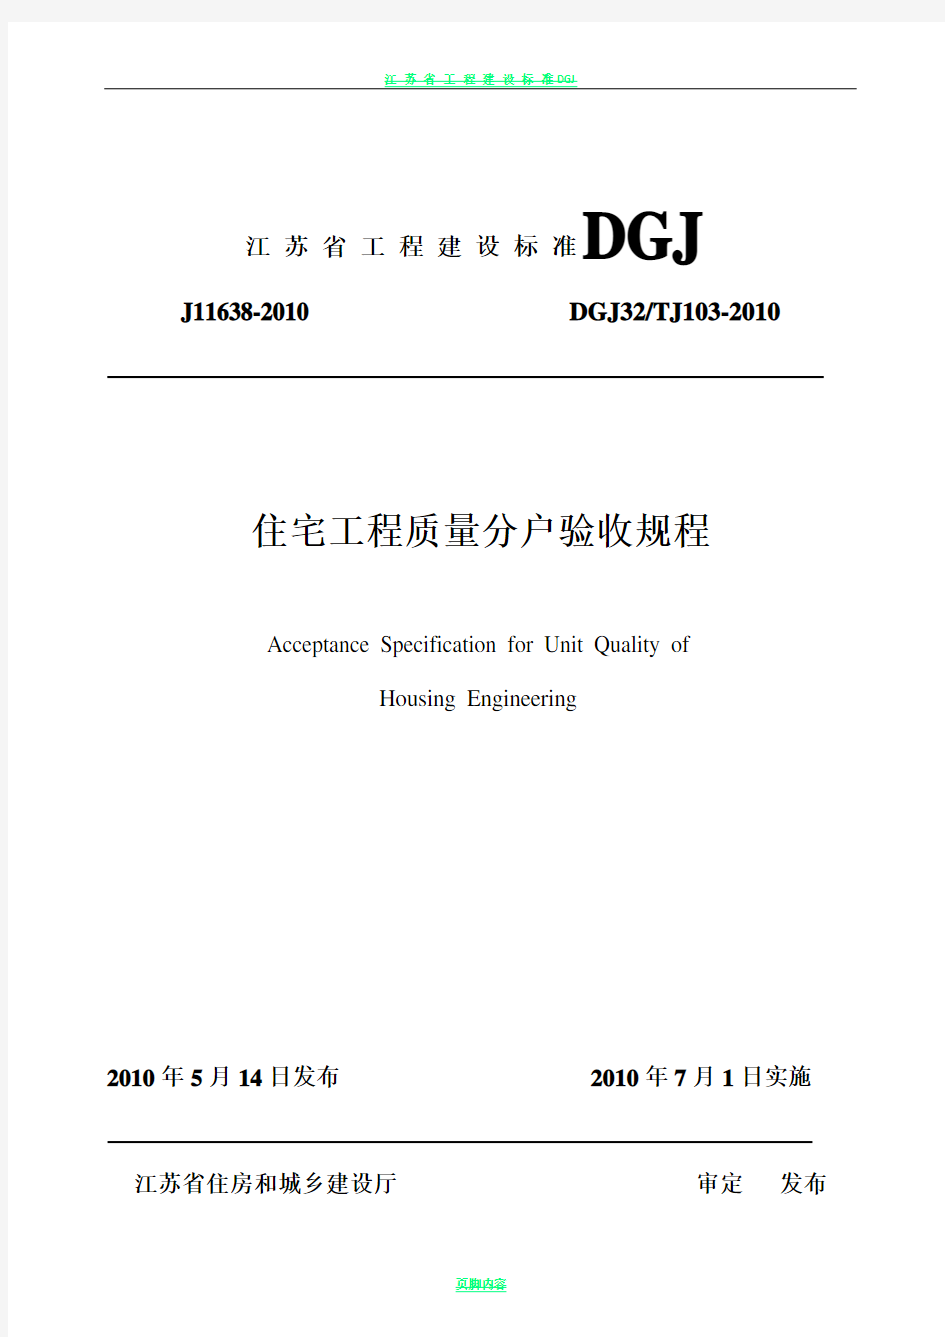 江苏省住宅工程质量分户验收规程__DGJ32TJ103-2010